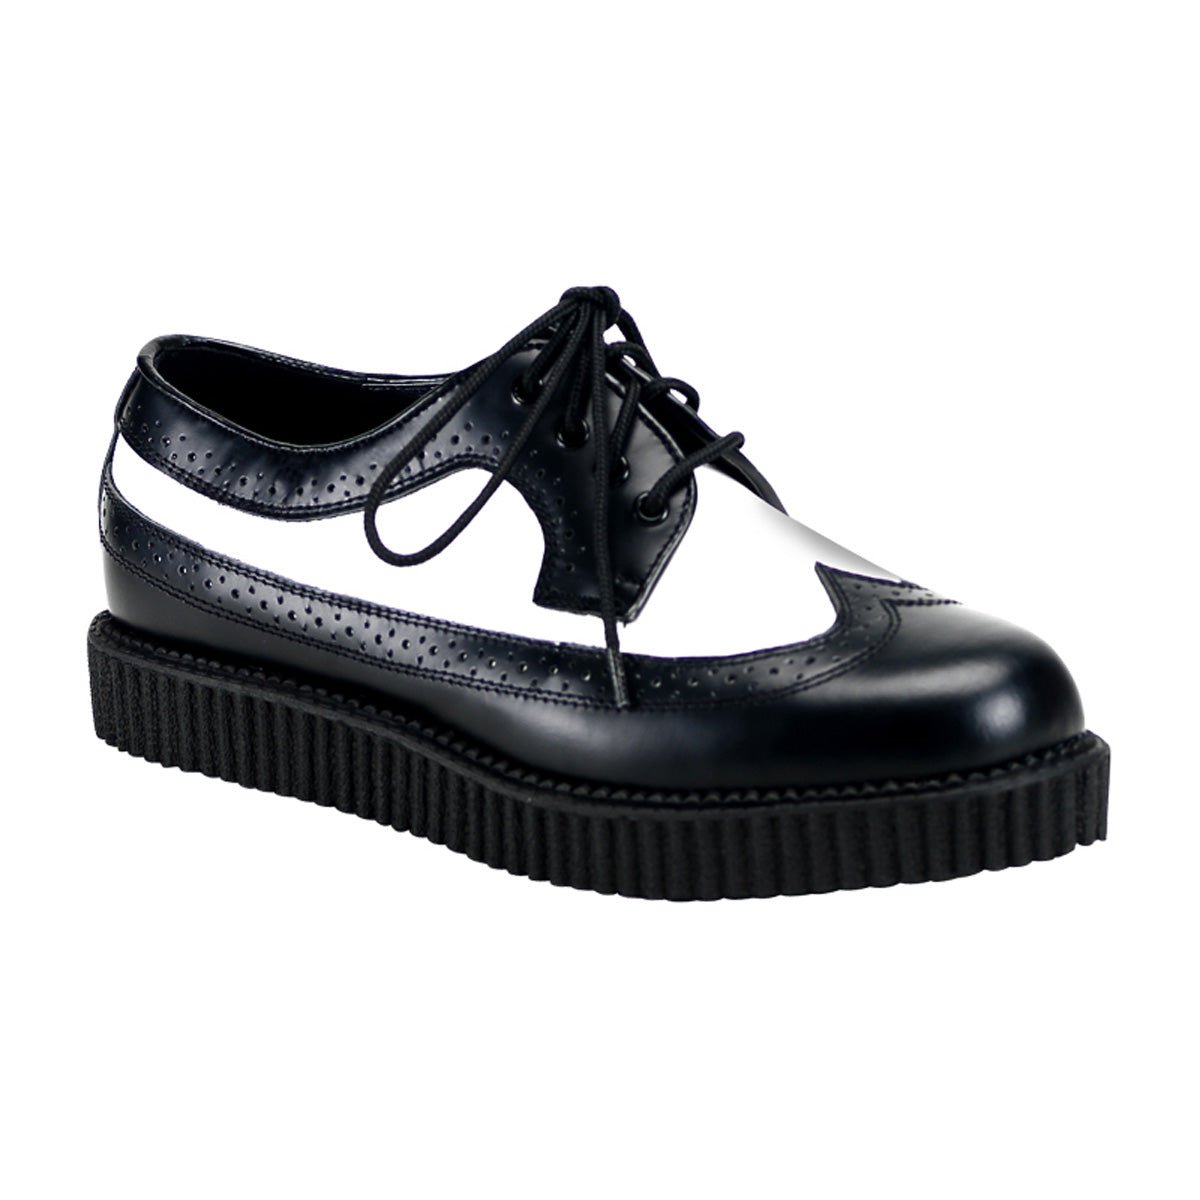 Sapato Creeper 215 - Demonia (encomenda)DemoniaSAPATOSPlayPole - Sapatos  exóticos, roupas e acessórios alternativos além de produtos para Pole Dance